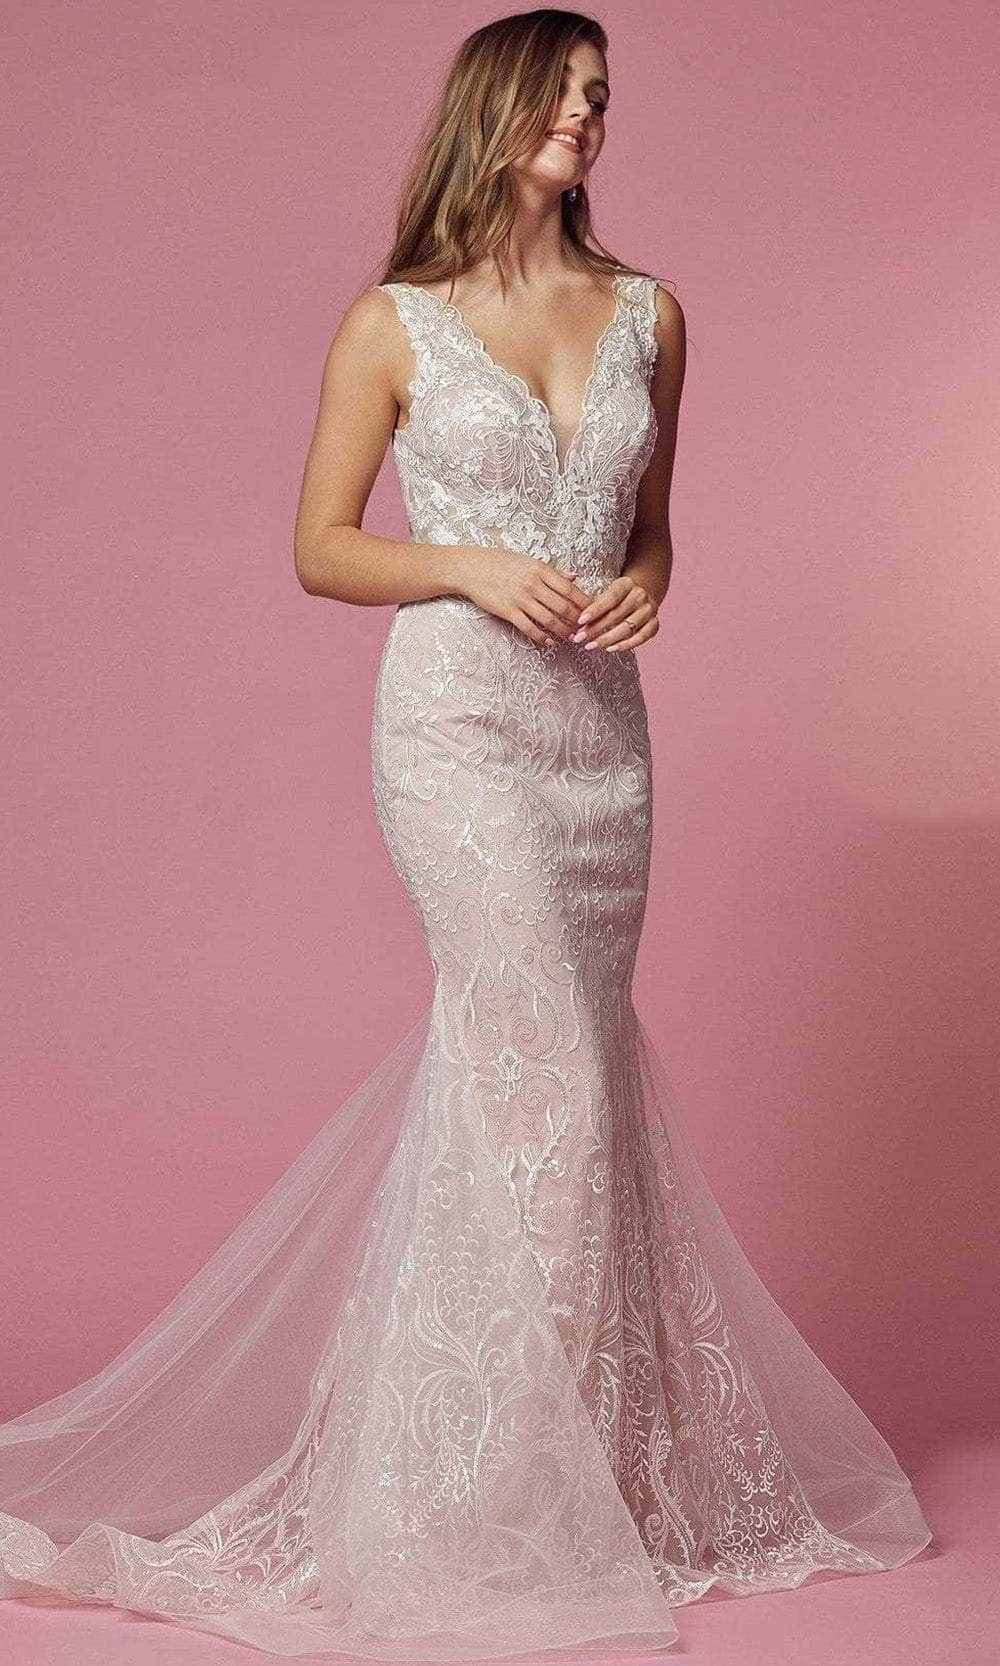 Nox Anabel JW909 - Lace Scalloped V-neck Wedding Dress Wedding Dresses 00 / White And Rose